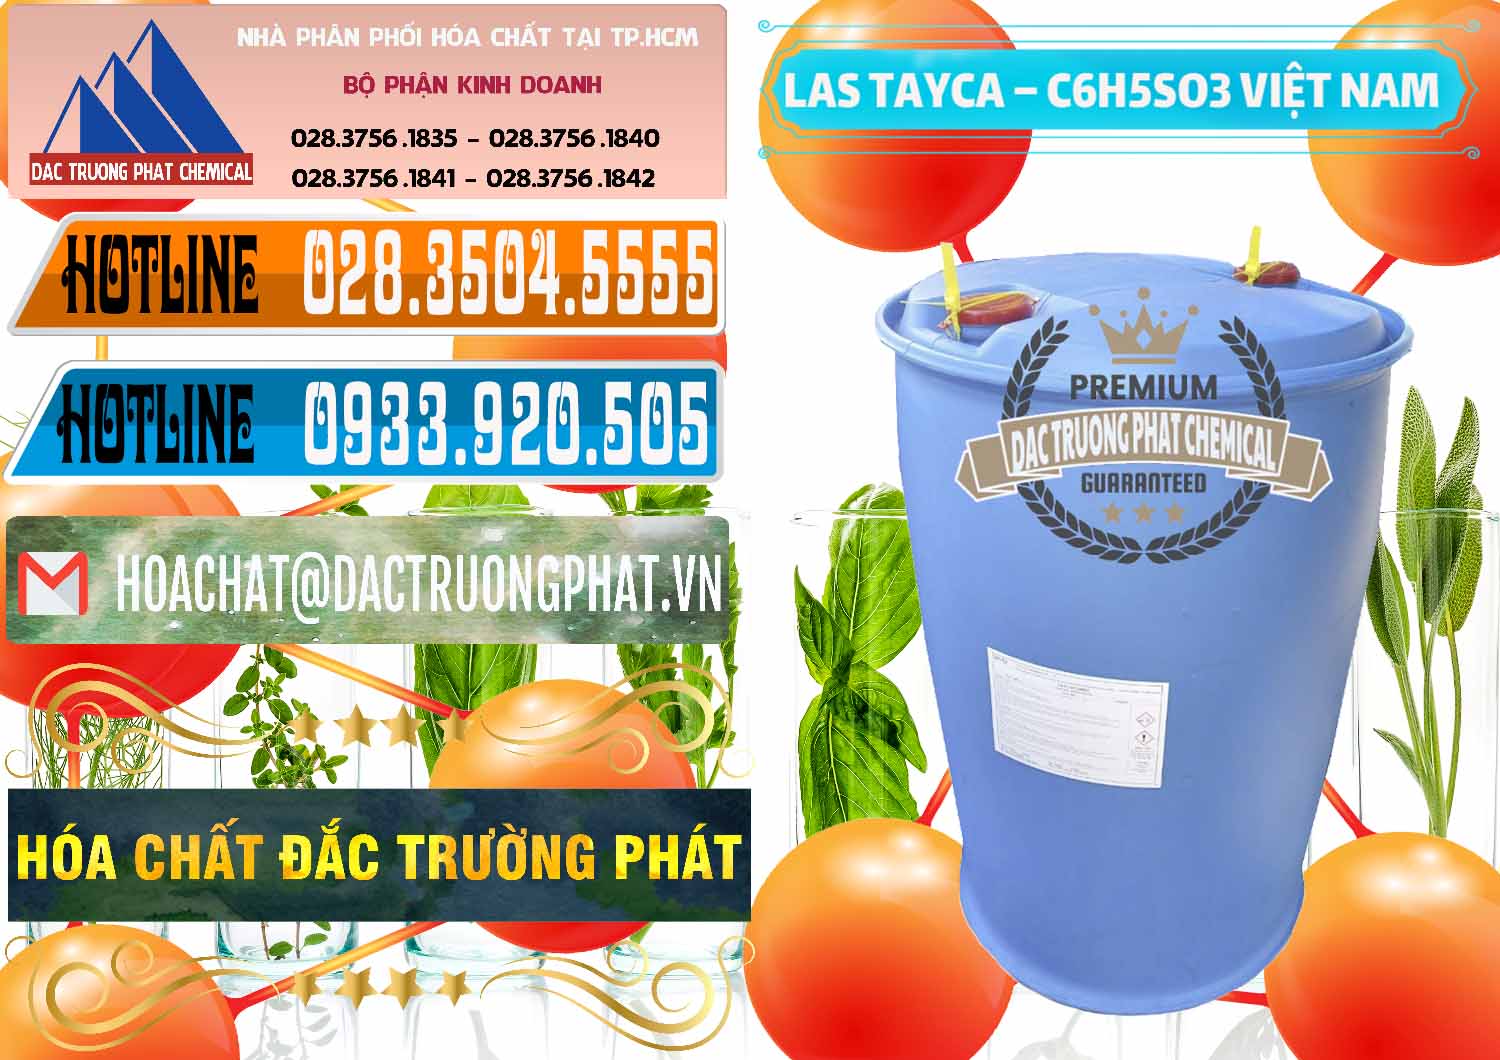 Cty chuyên cung cấp ( kinh doanh ) Chất tạo bọt Las Tayca Việt Nam - 0305 - Nơi chuyên cung cấp và kinh doanh hóa chất tại TP.HCM - stmp.net